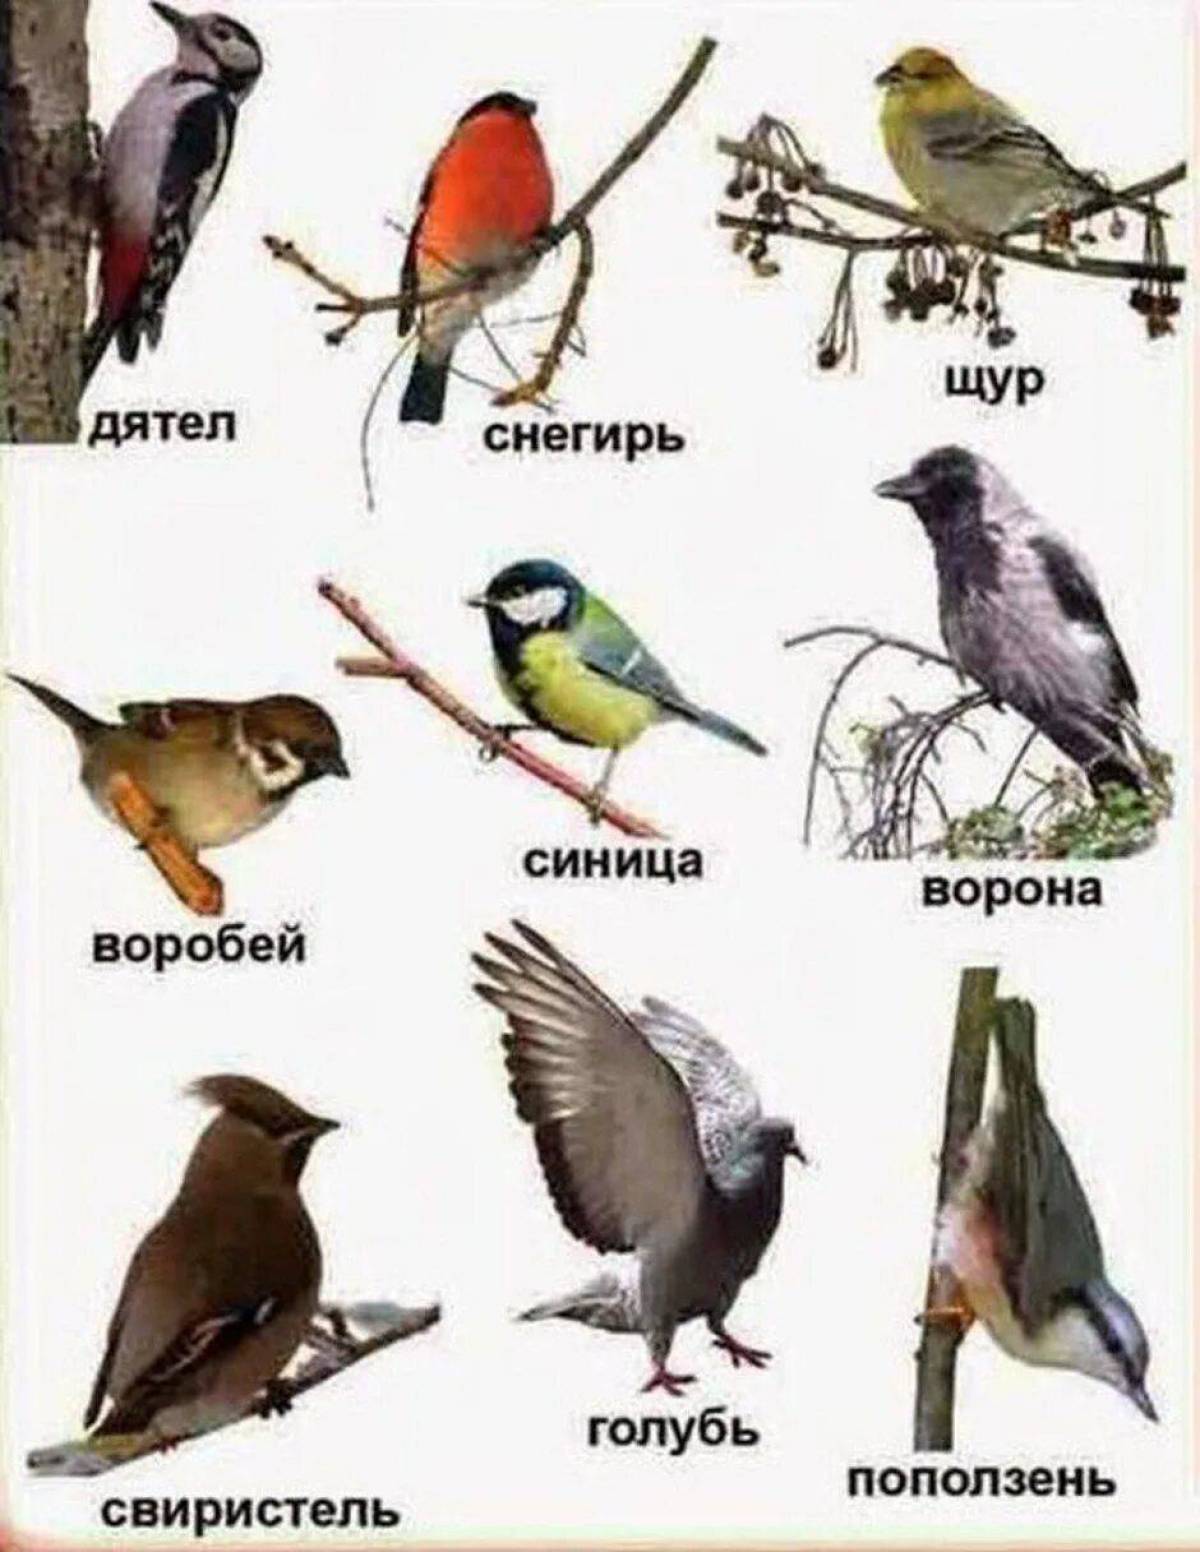 перелетные птицы россии фото с названиями